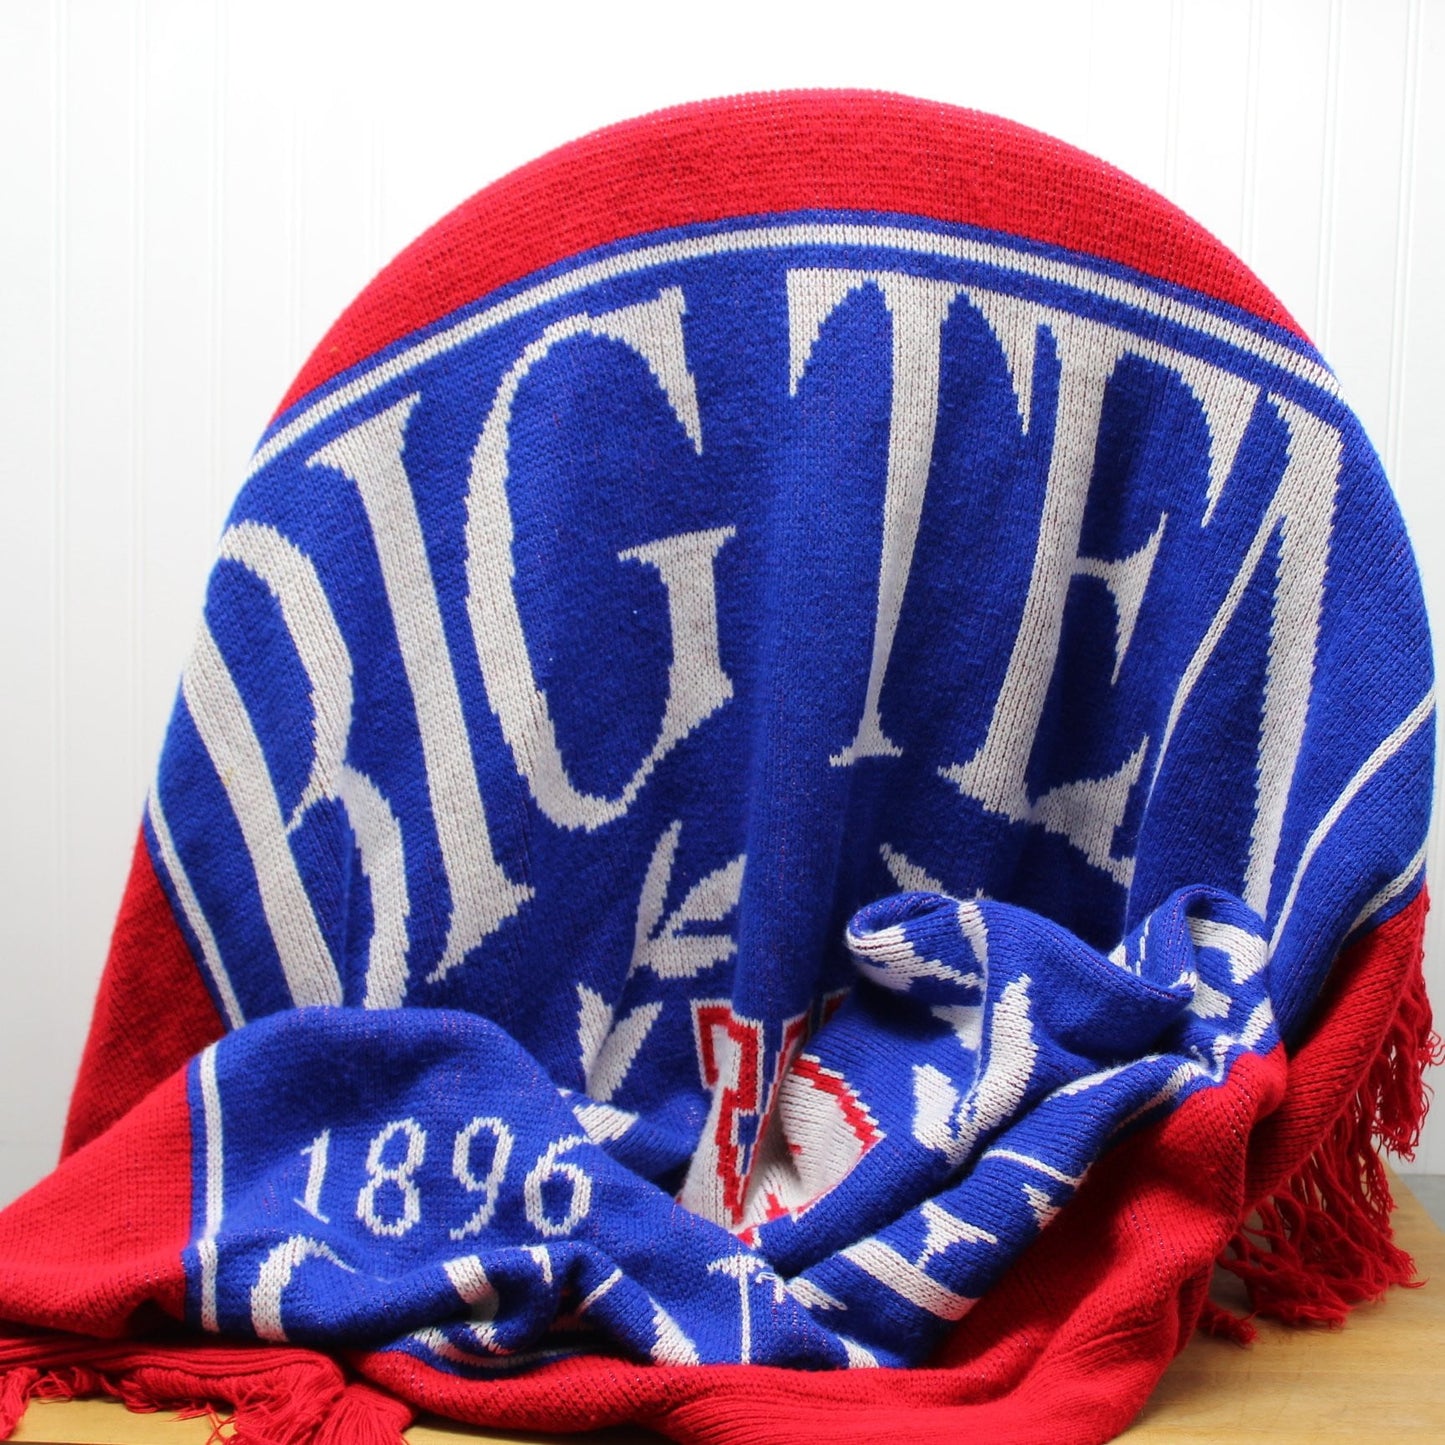 Big Ten Centennial Collectible Throw Blanket -  1896 -- 1996 - Wisconsin